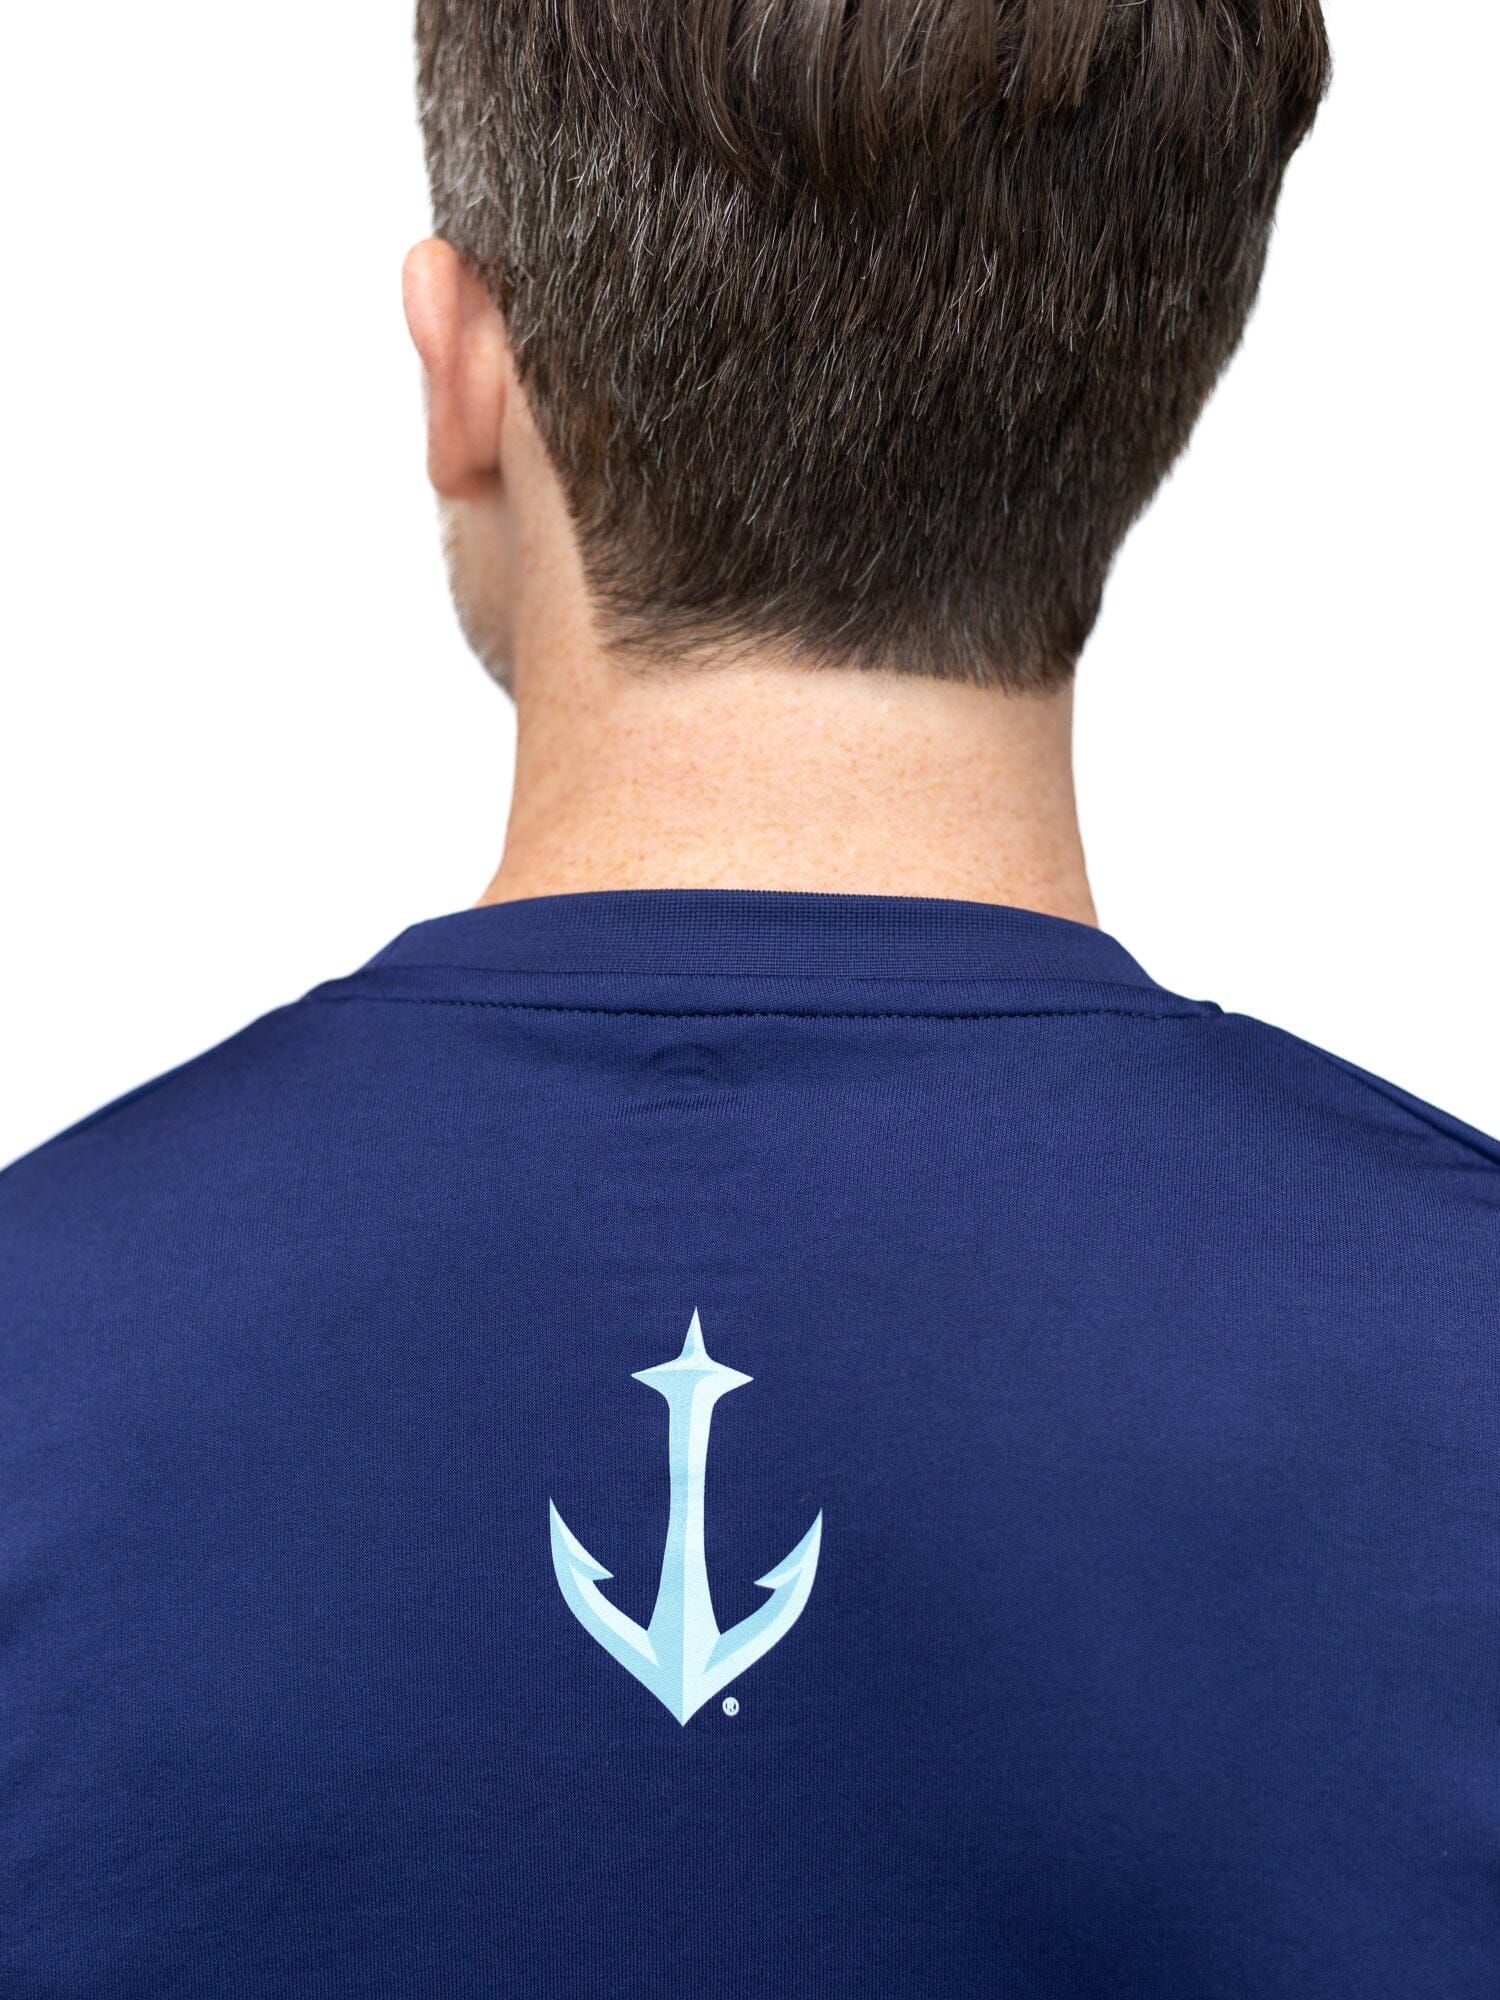 Seattle Kraken "Full Fandom" Moisture Wicking T-Shirt - Back Logo